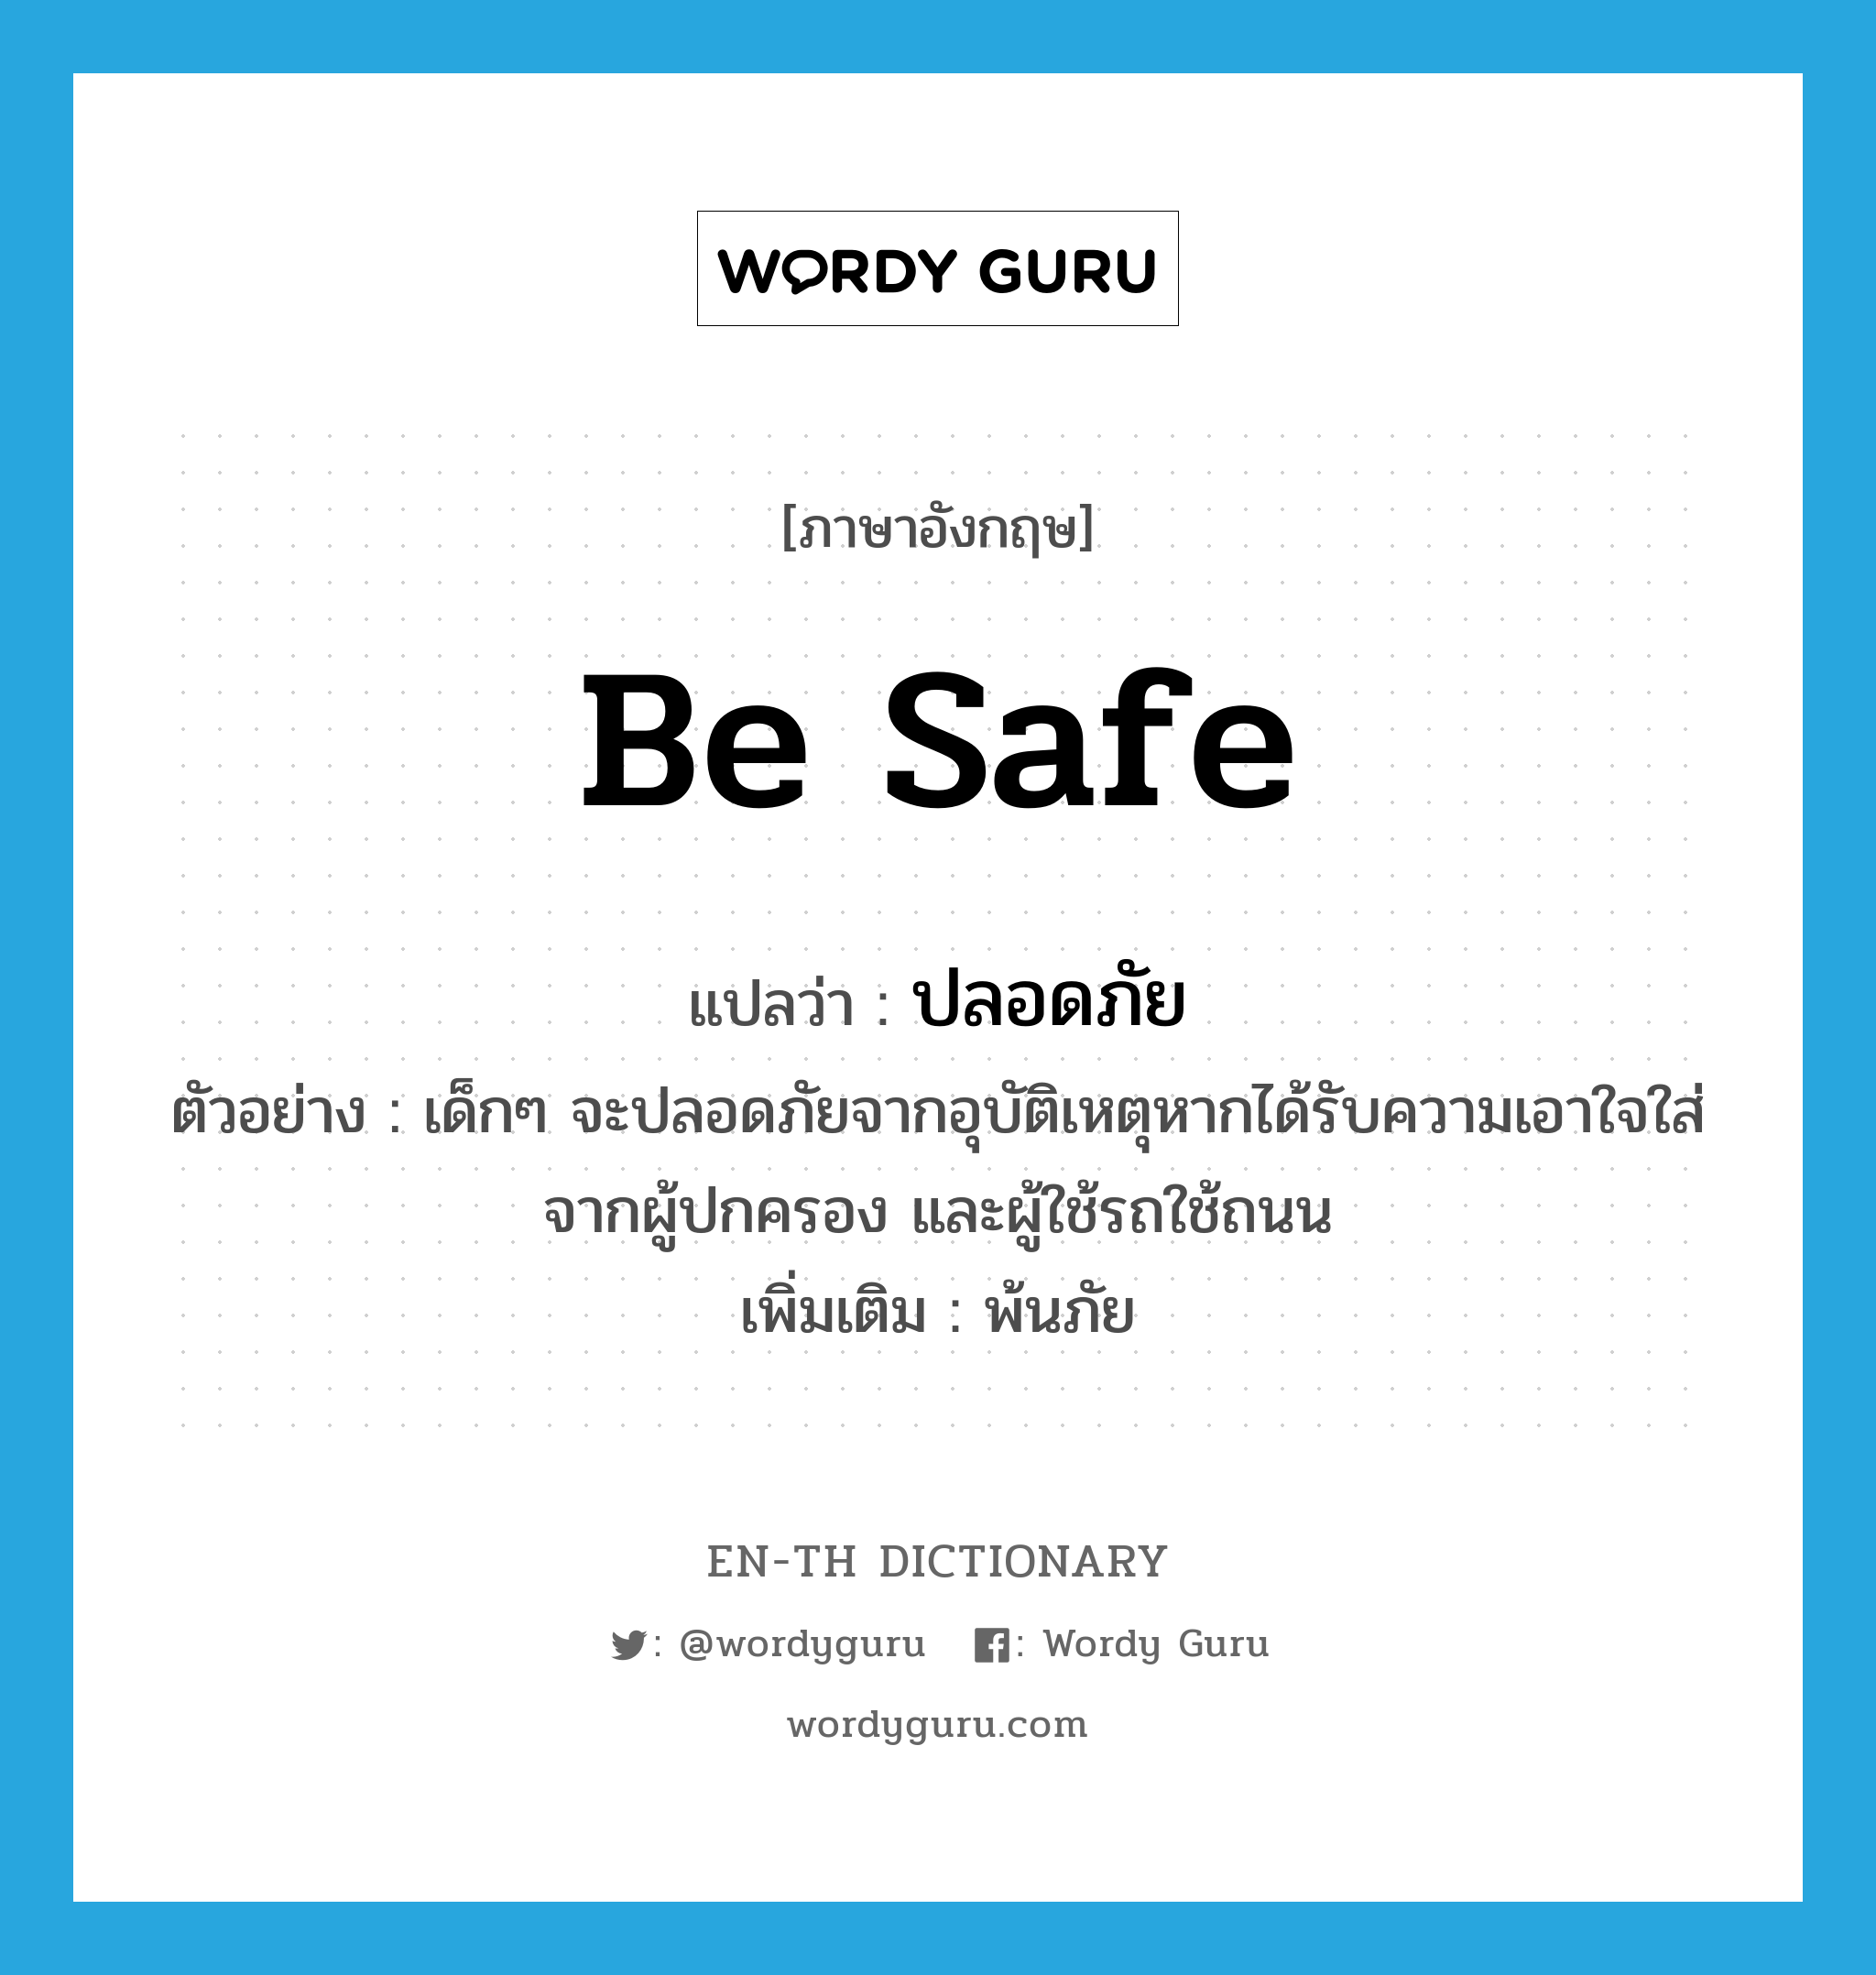 be safe แปลว่า?, คำศัพท์ภาษาอังกฤษ be safe แปลว่า ปลอดภัย ประเภท V ตัวอย่าง เด็กๆ จะปลอดภัยจากอุบัติเหตุหากได้รับความเอาใจใส่จากผู้ปกครอง และผู้ใช้รถใช้ถนน เพิ่มเติม พ้นภัย หมวด V